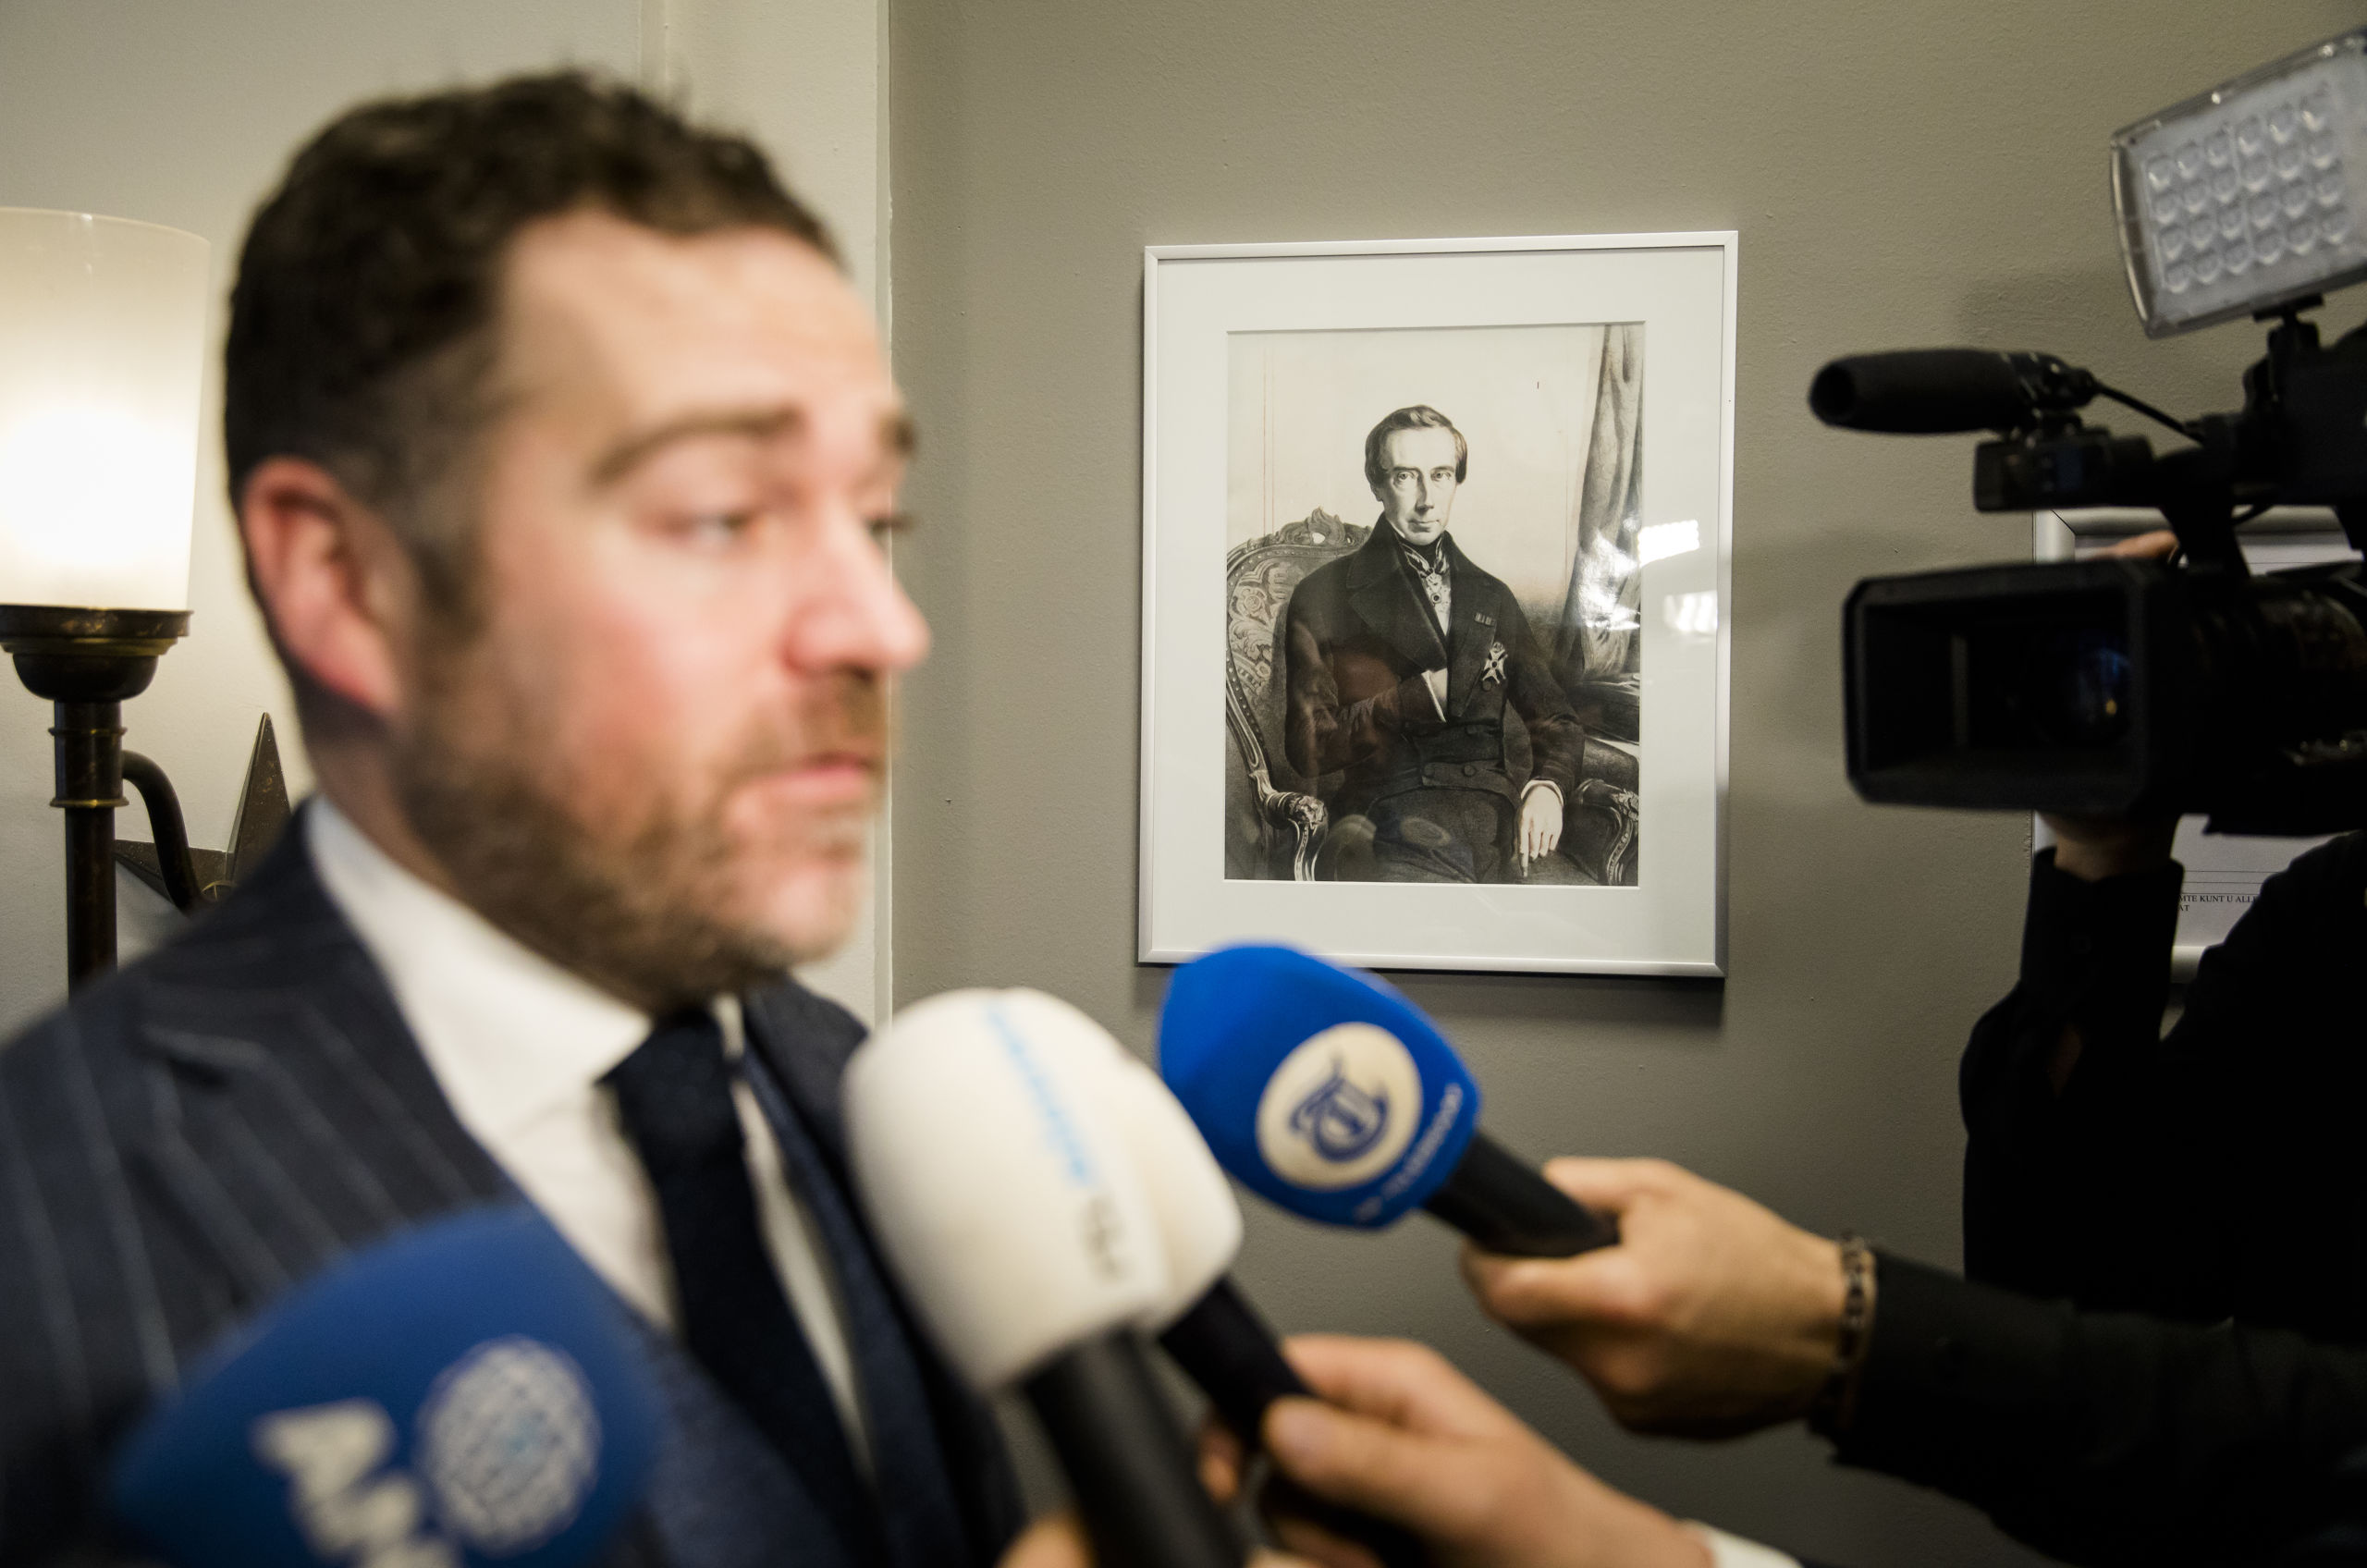 2019-03-21 13:38:25 DEN HAAG - Klaas Dijkhoff (VVD) in gesprek met de pers voorafgaand aan een fractievergadering van de VVD, een dag na de verkiezingen voor de Provinciale Staten. ANP BART MAAT